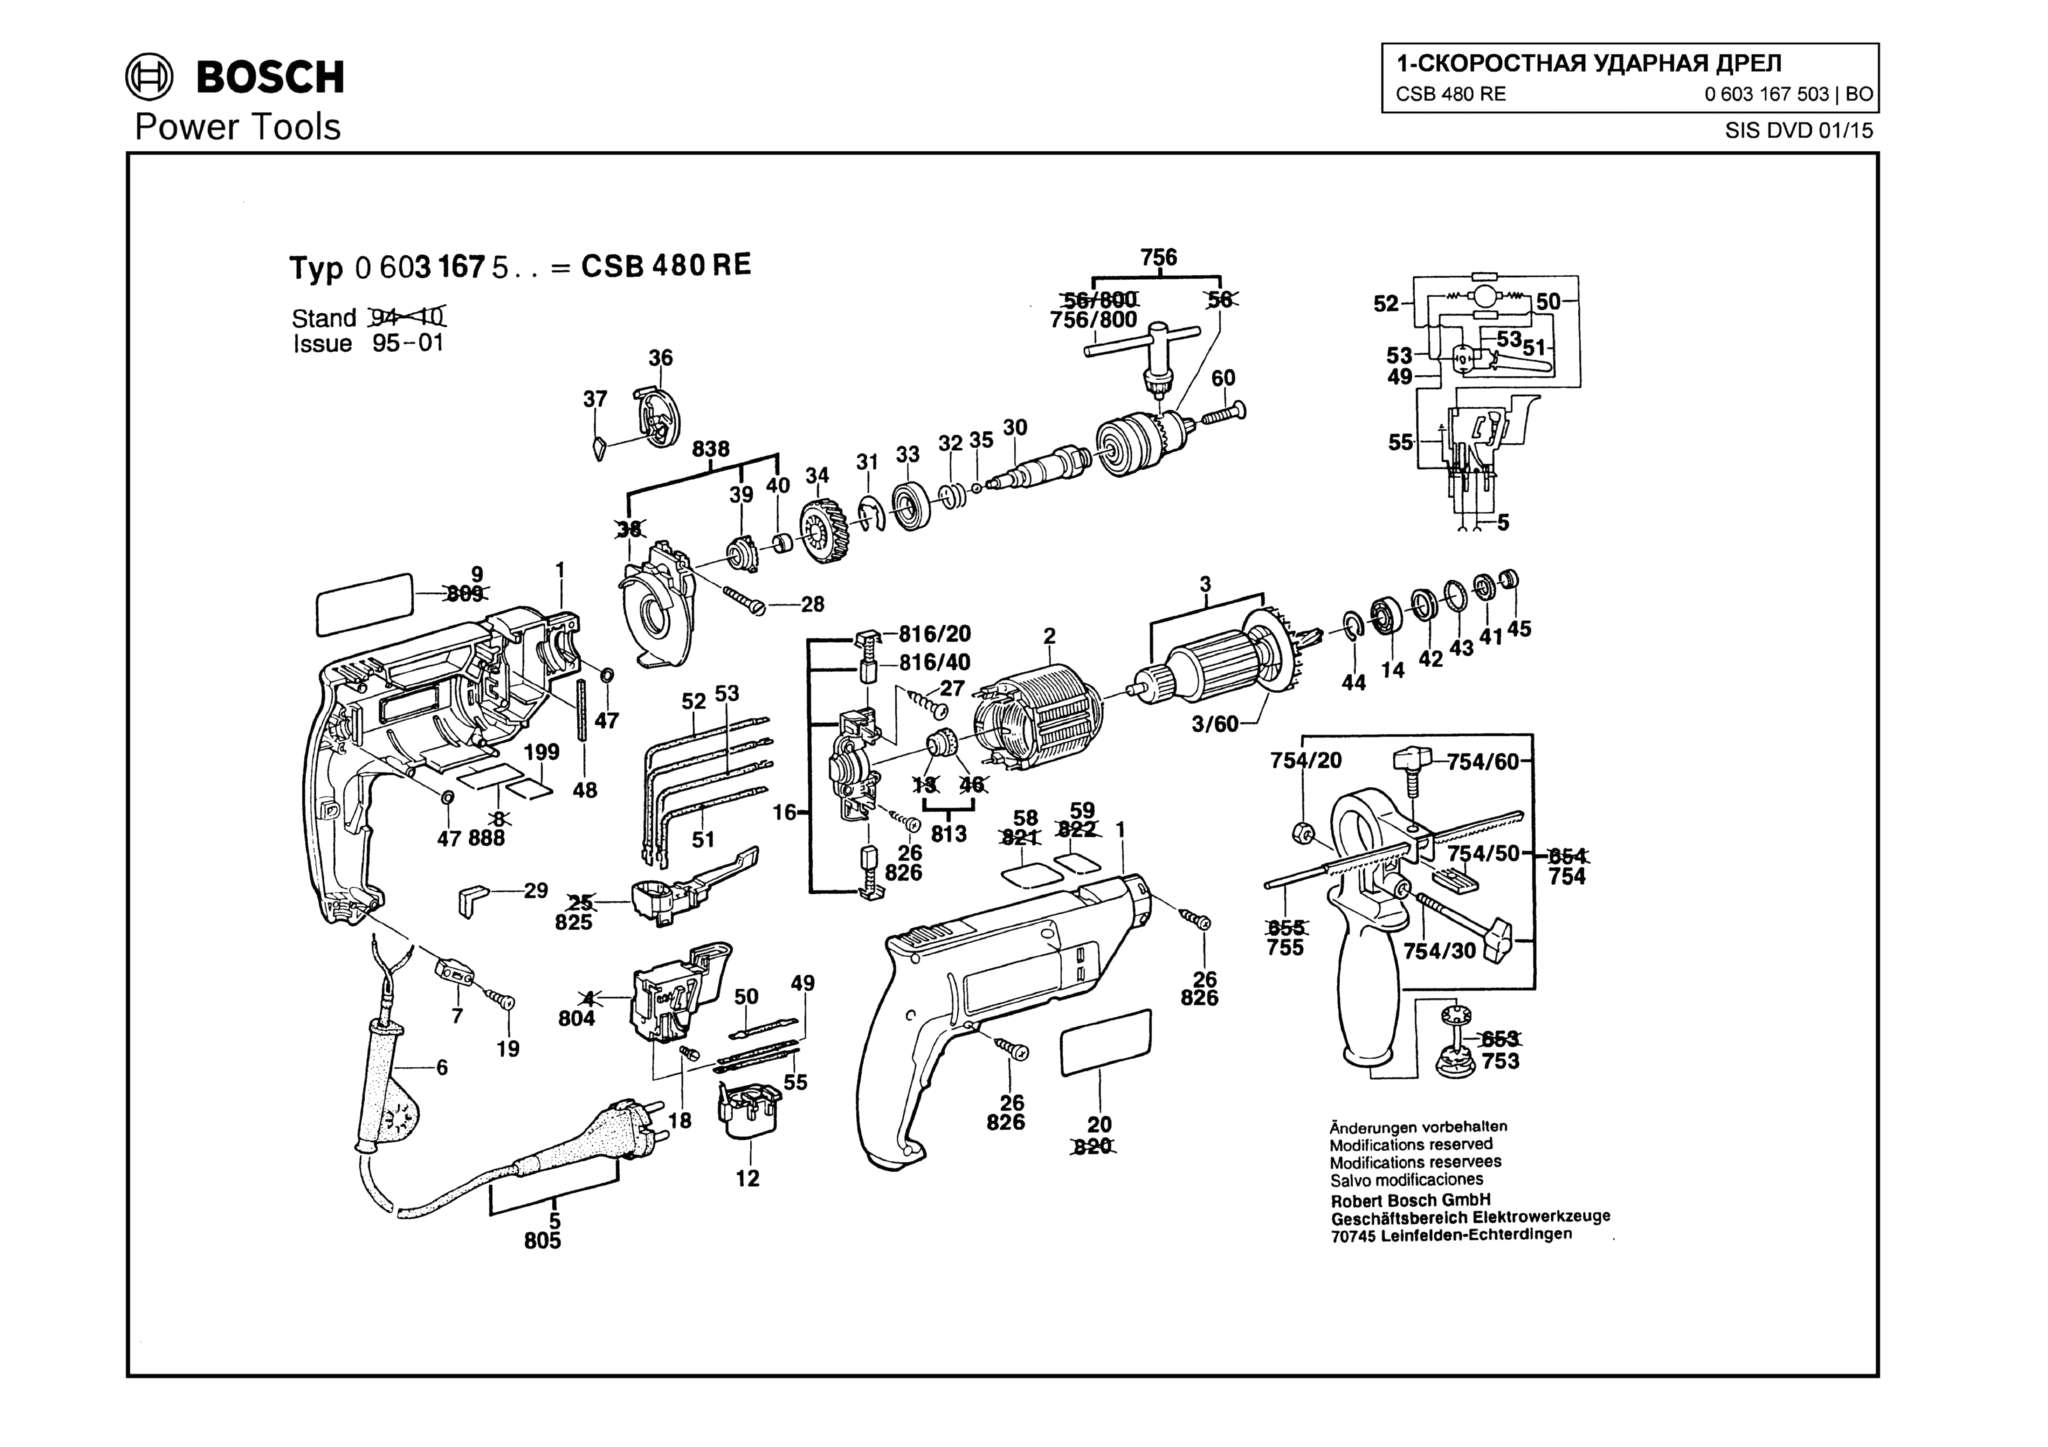 Запчасти, схема и деталировка Bosch CSB 480 RE (ТИП 0603167503)